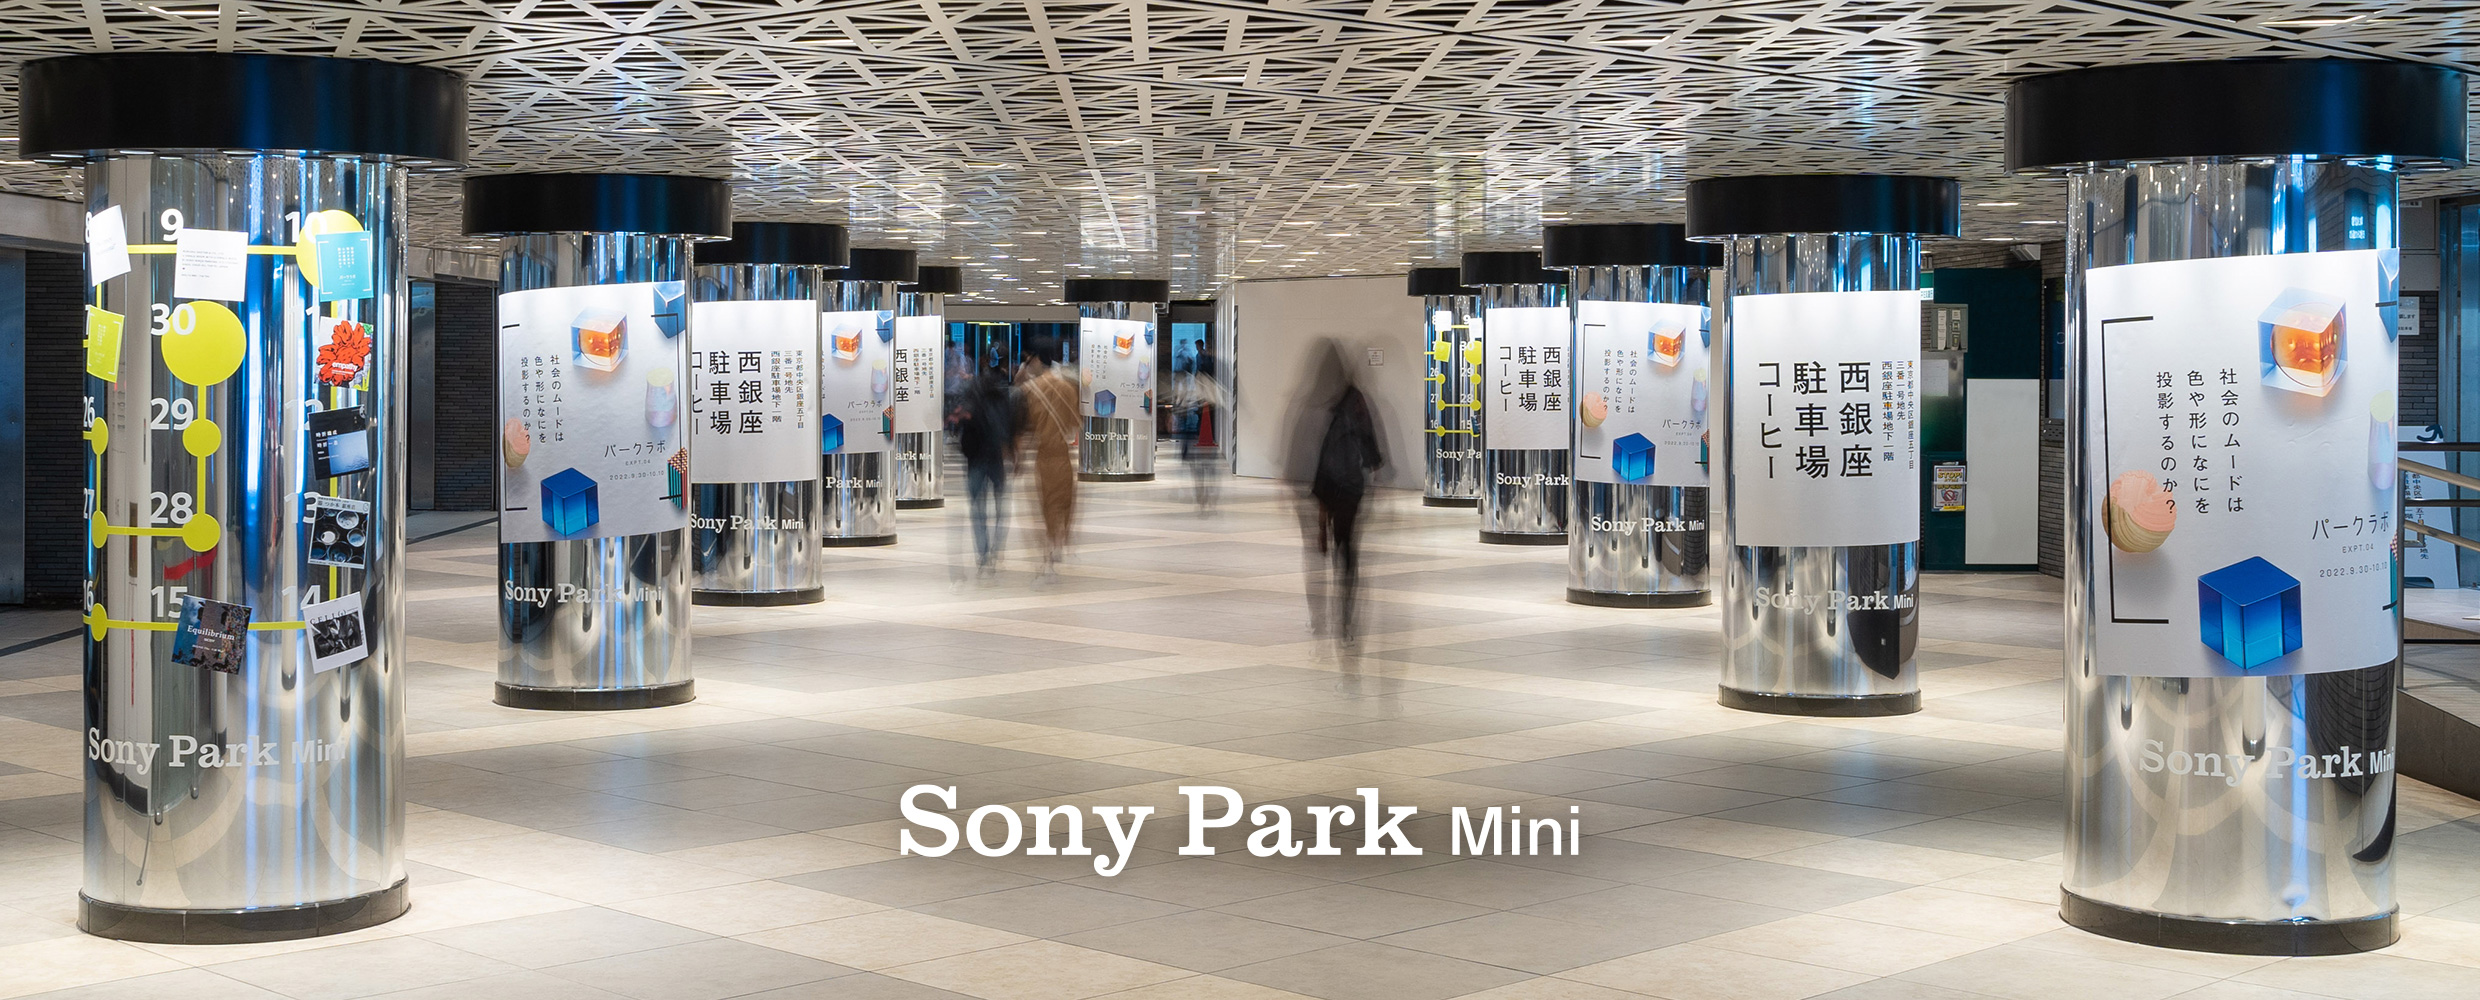 Sony Park Mini